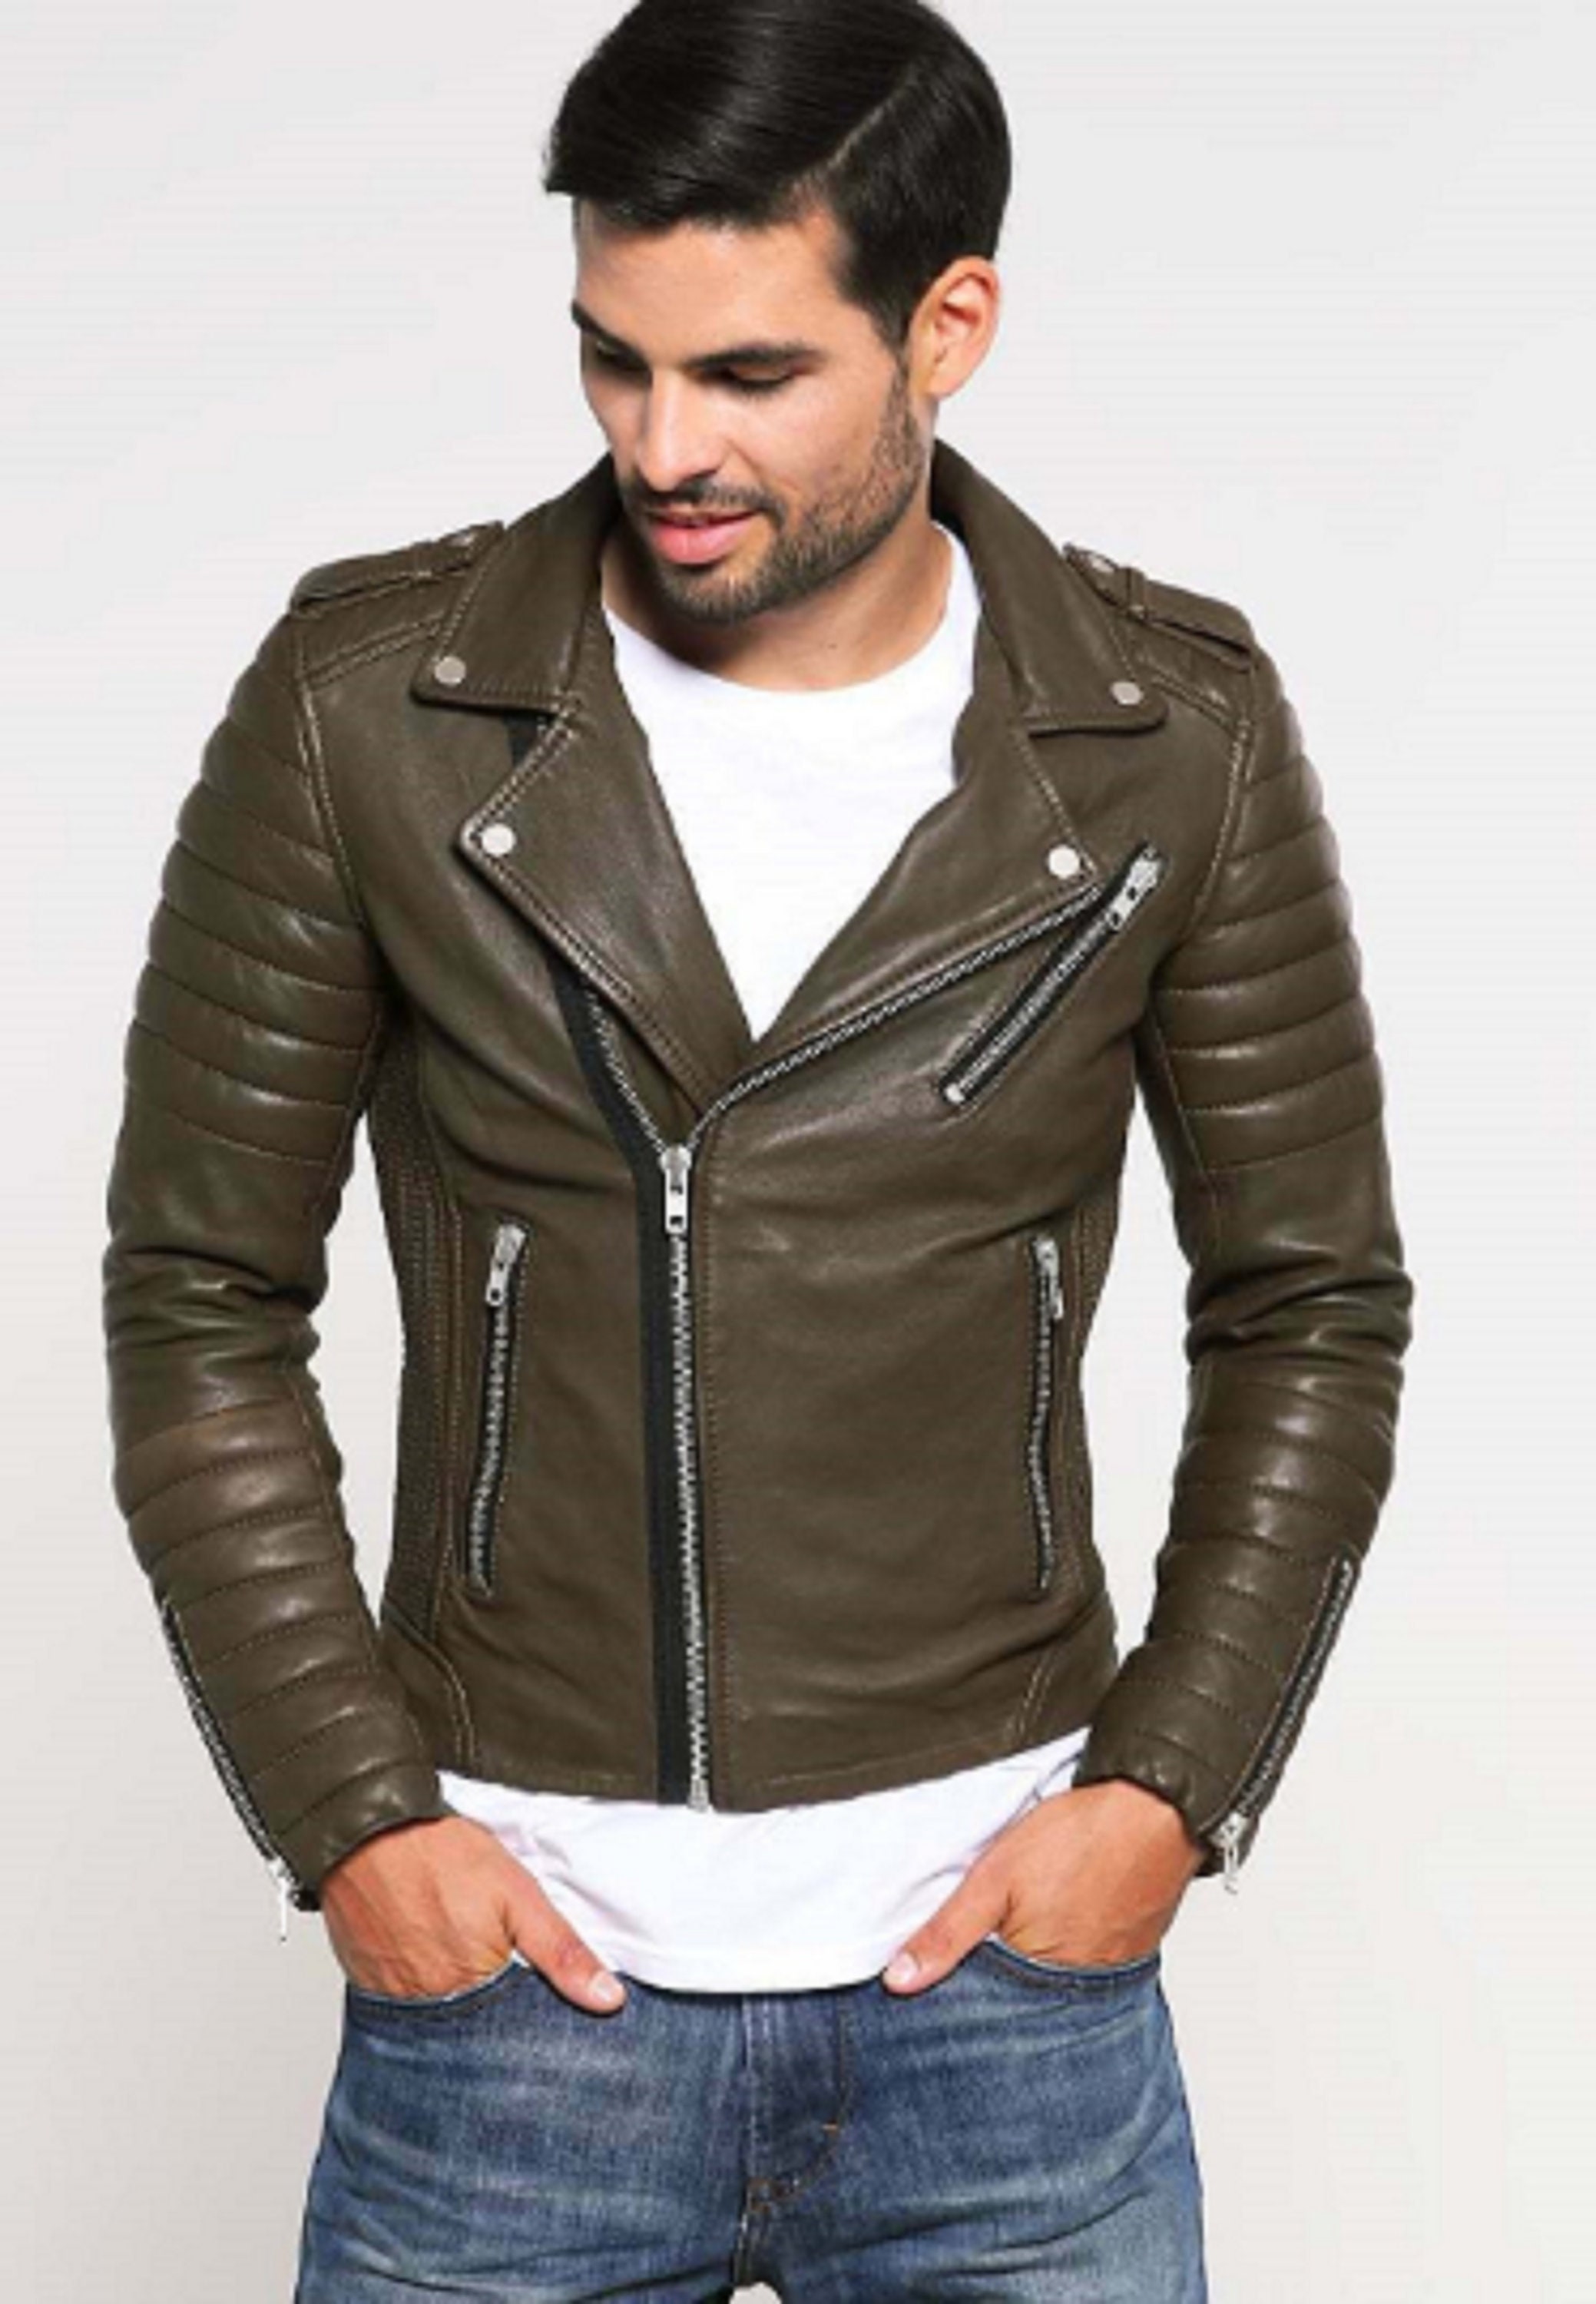 NOORA New Leather Jacket for Men Slim fit Khaki Color Genuine | Etsy